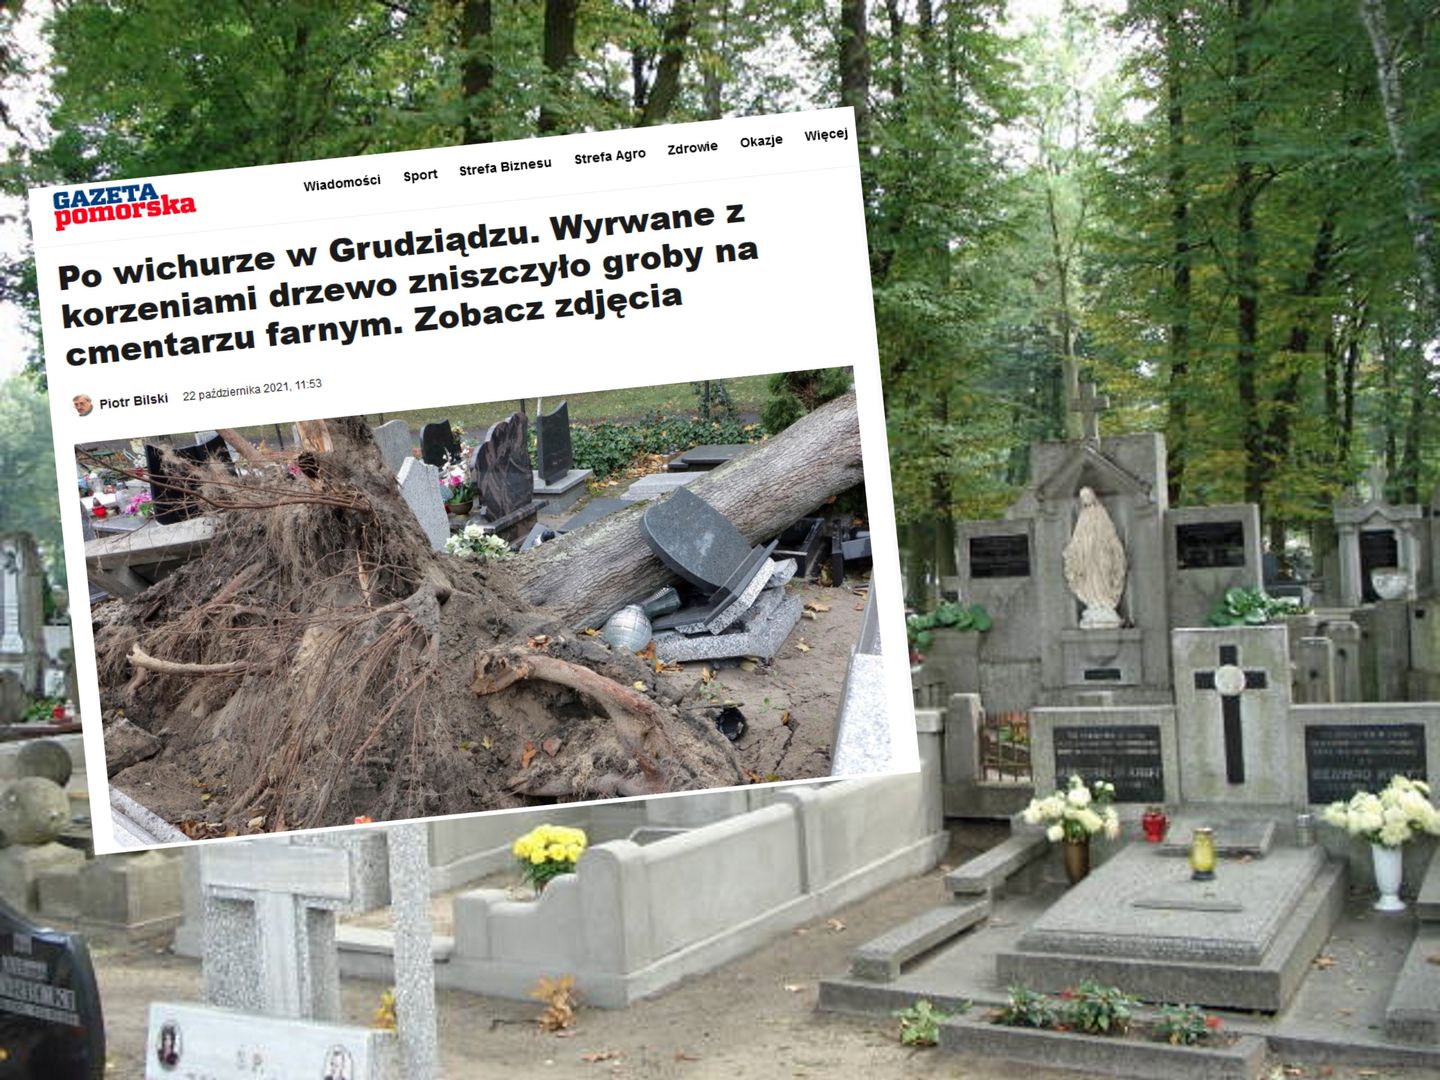 Dramatyczny widok na cmentarzu w Grudziądzu. Zdewastowane groby